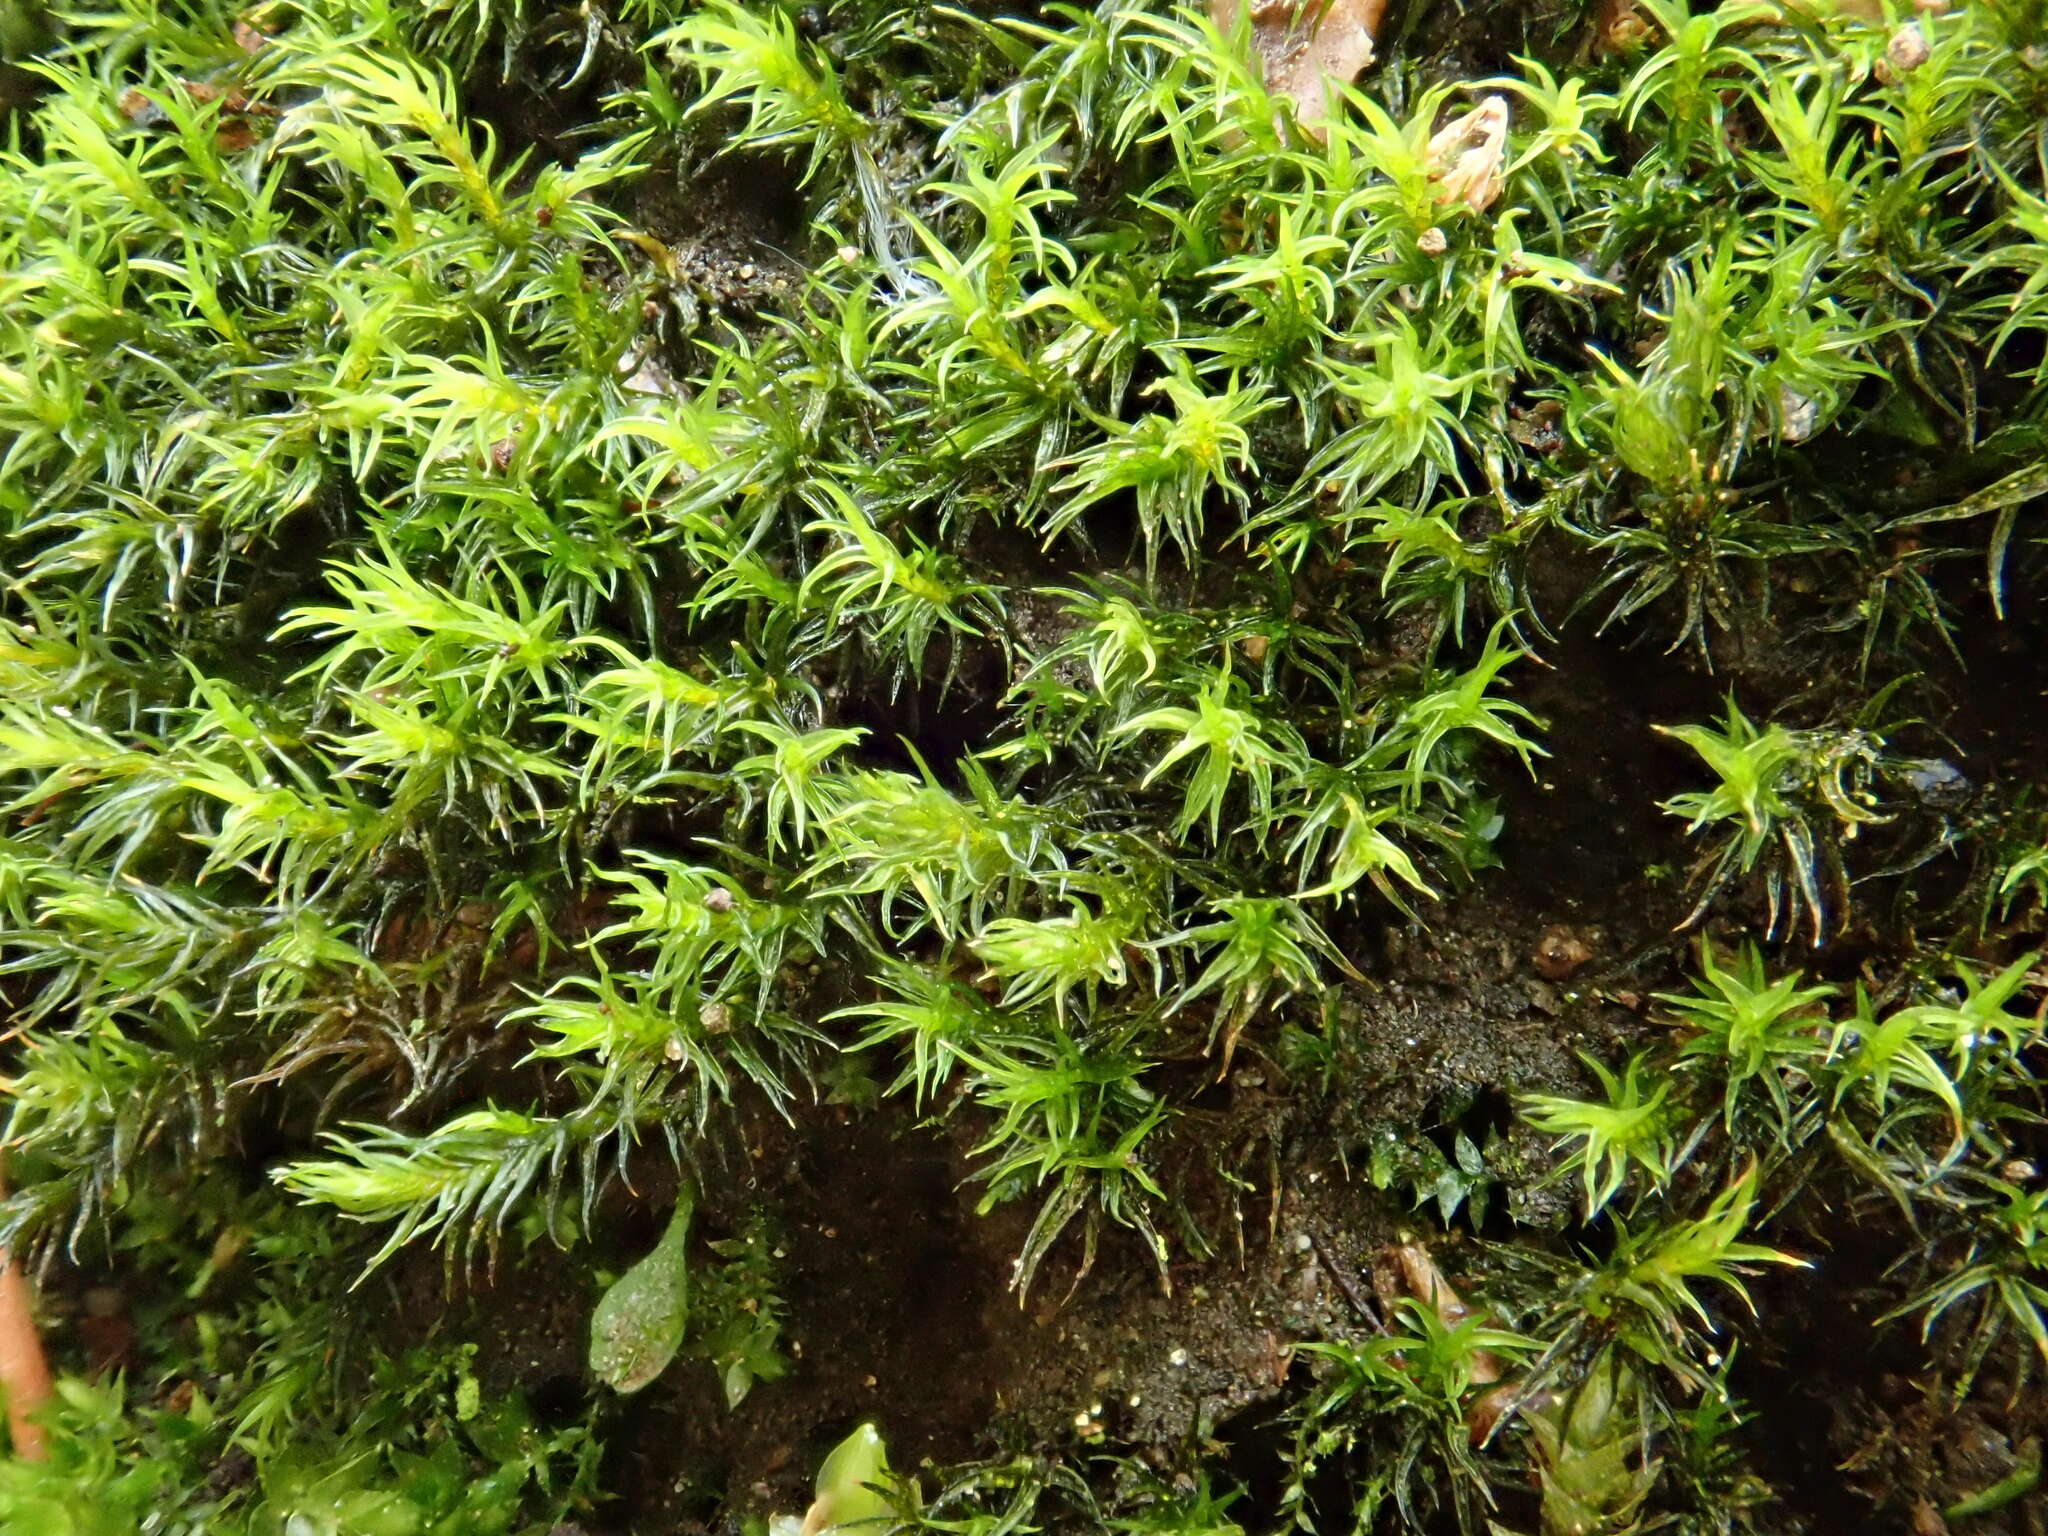 Image of Hartman's dry rock moss